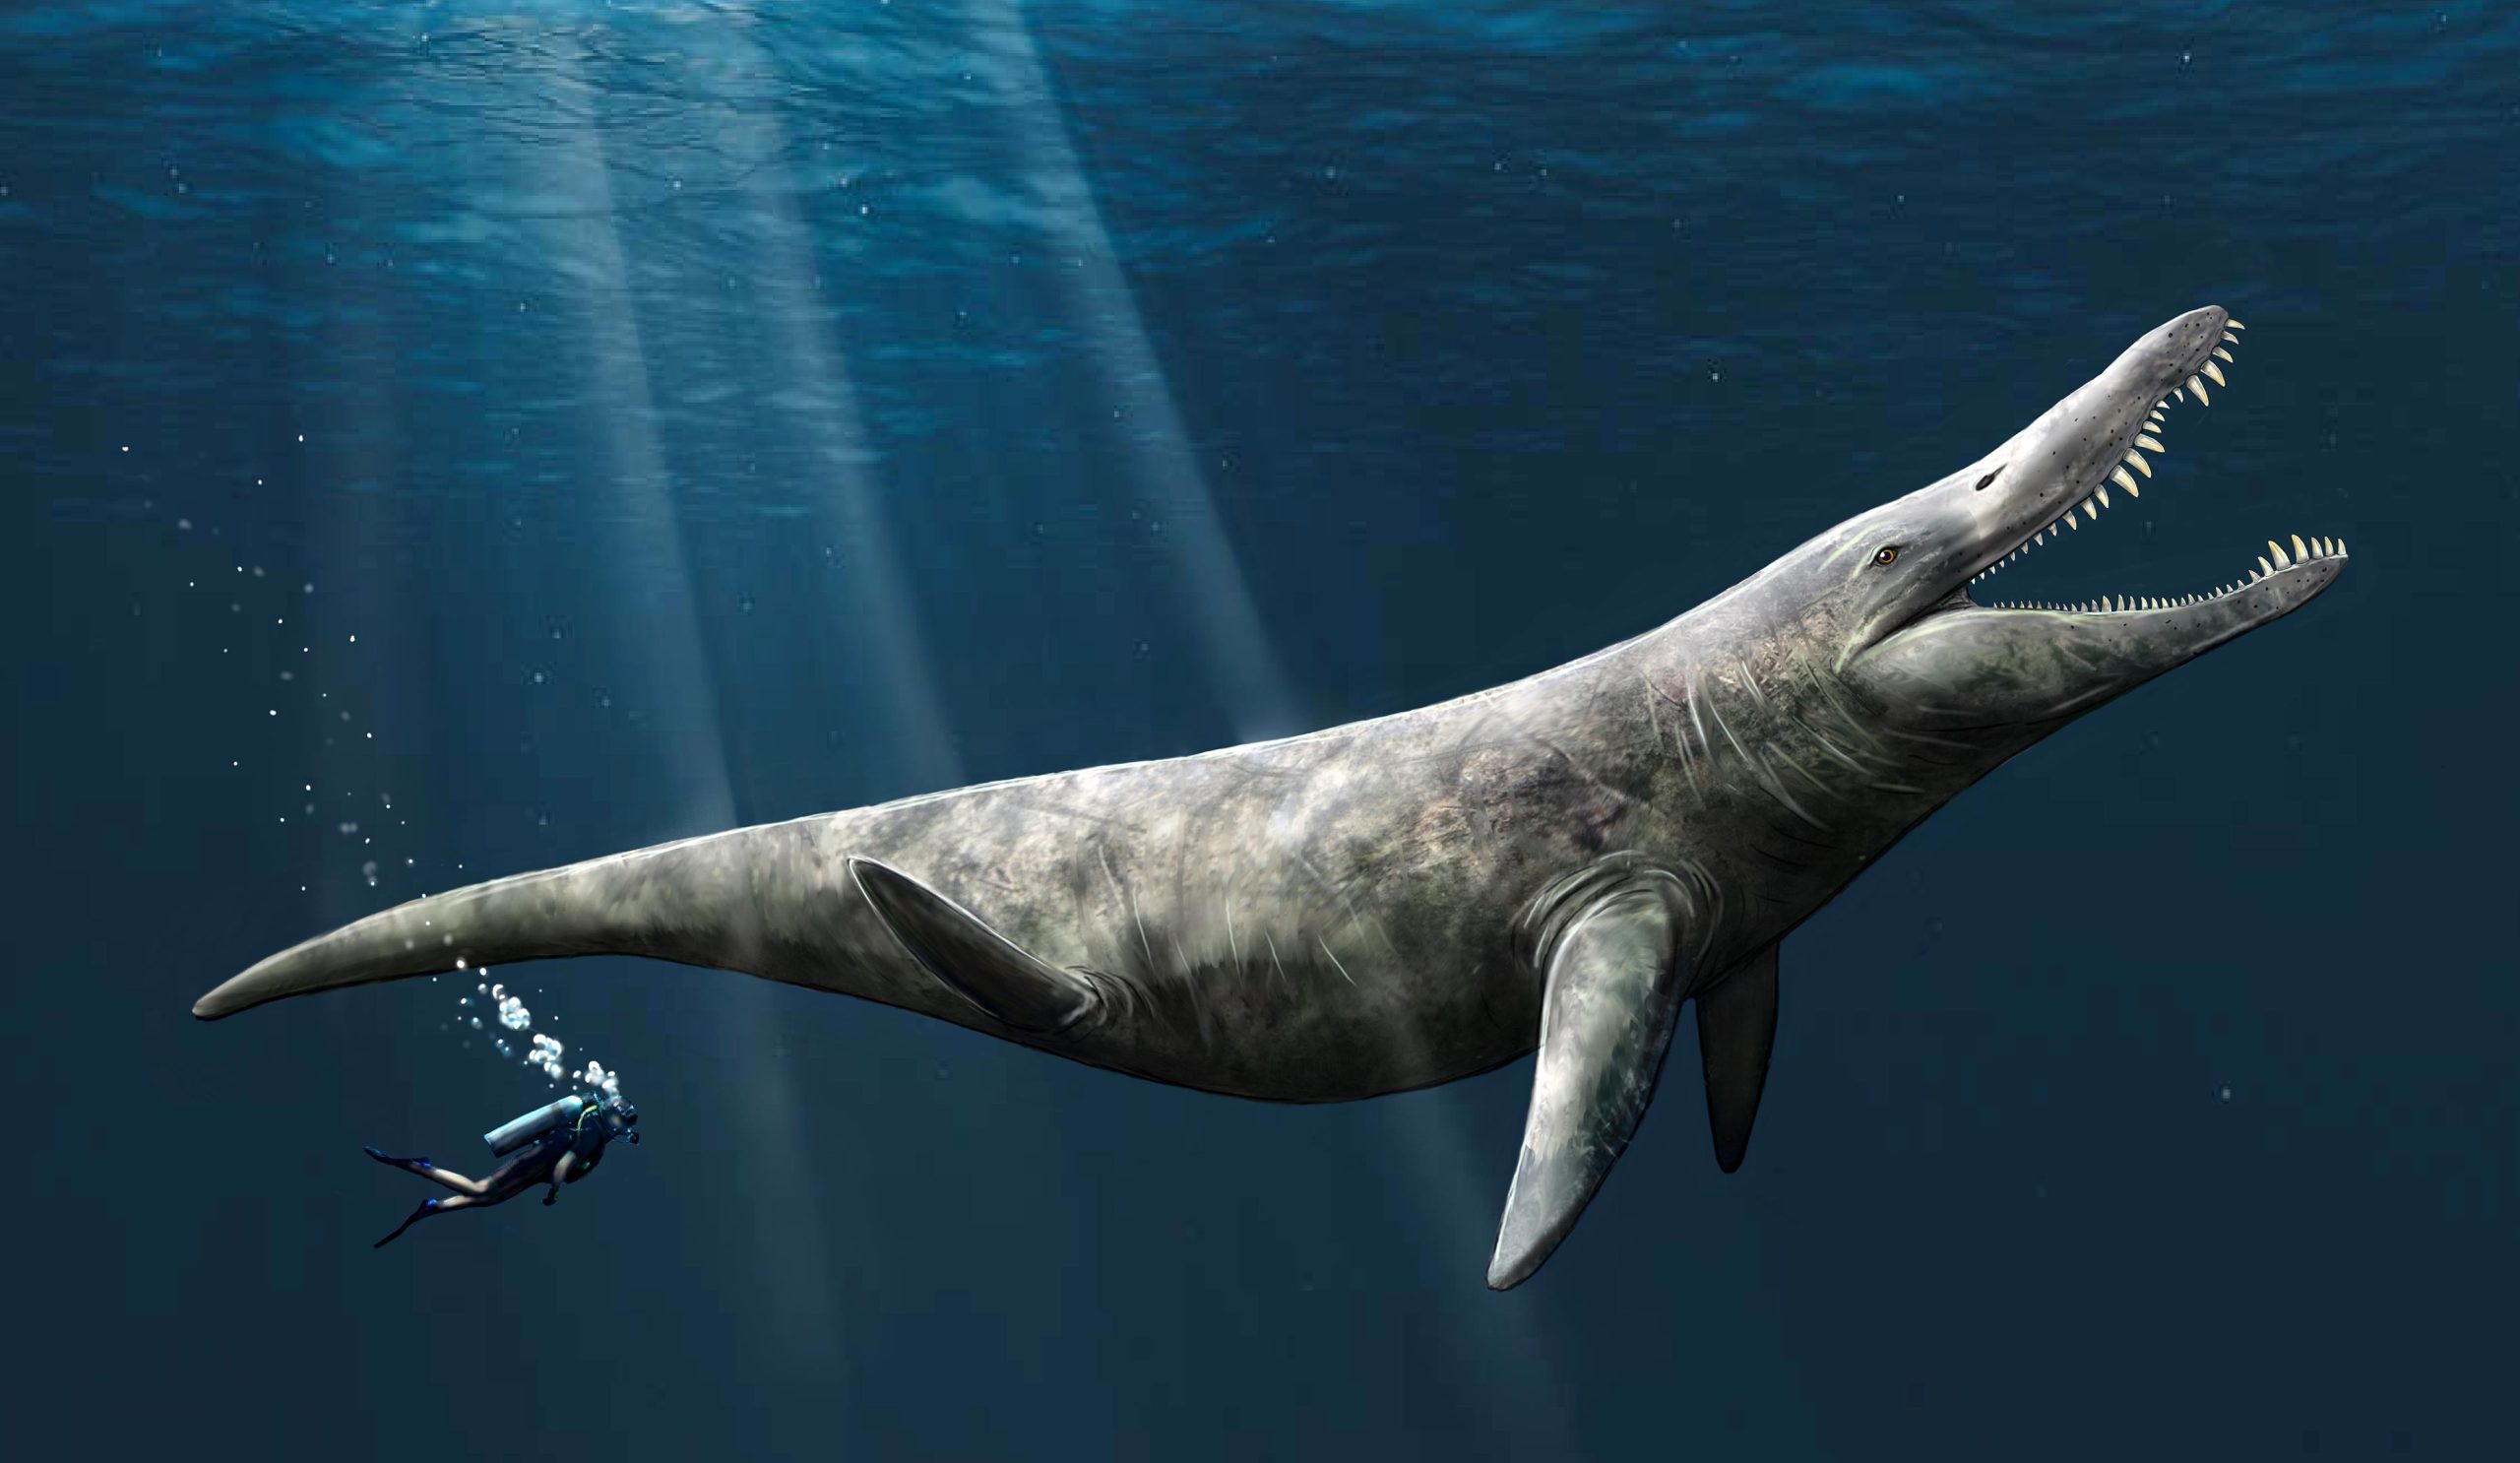 जुरासिक समुद्र के समुद्री राक्षस हत्यारे व्हेल से दोगुने बड़े थे